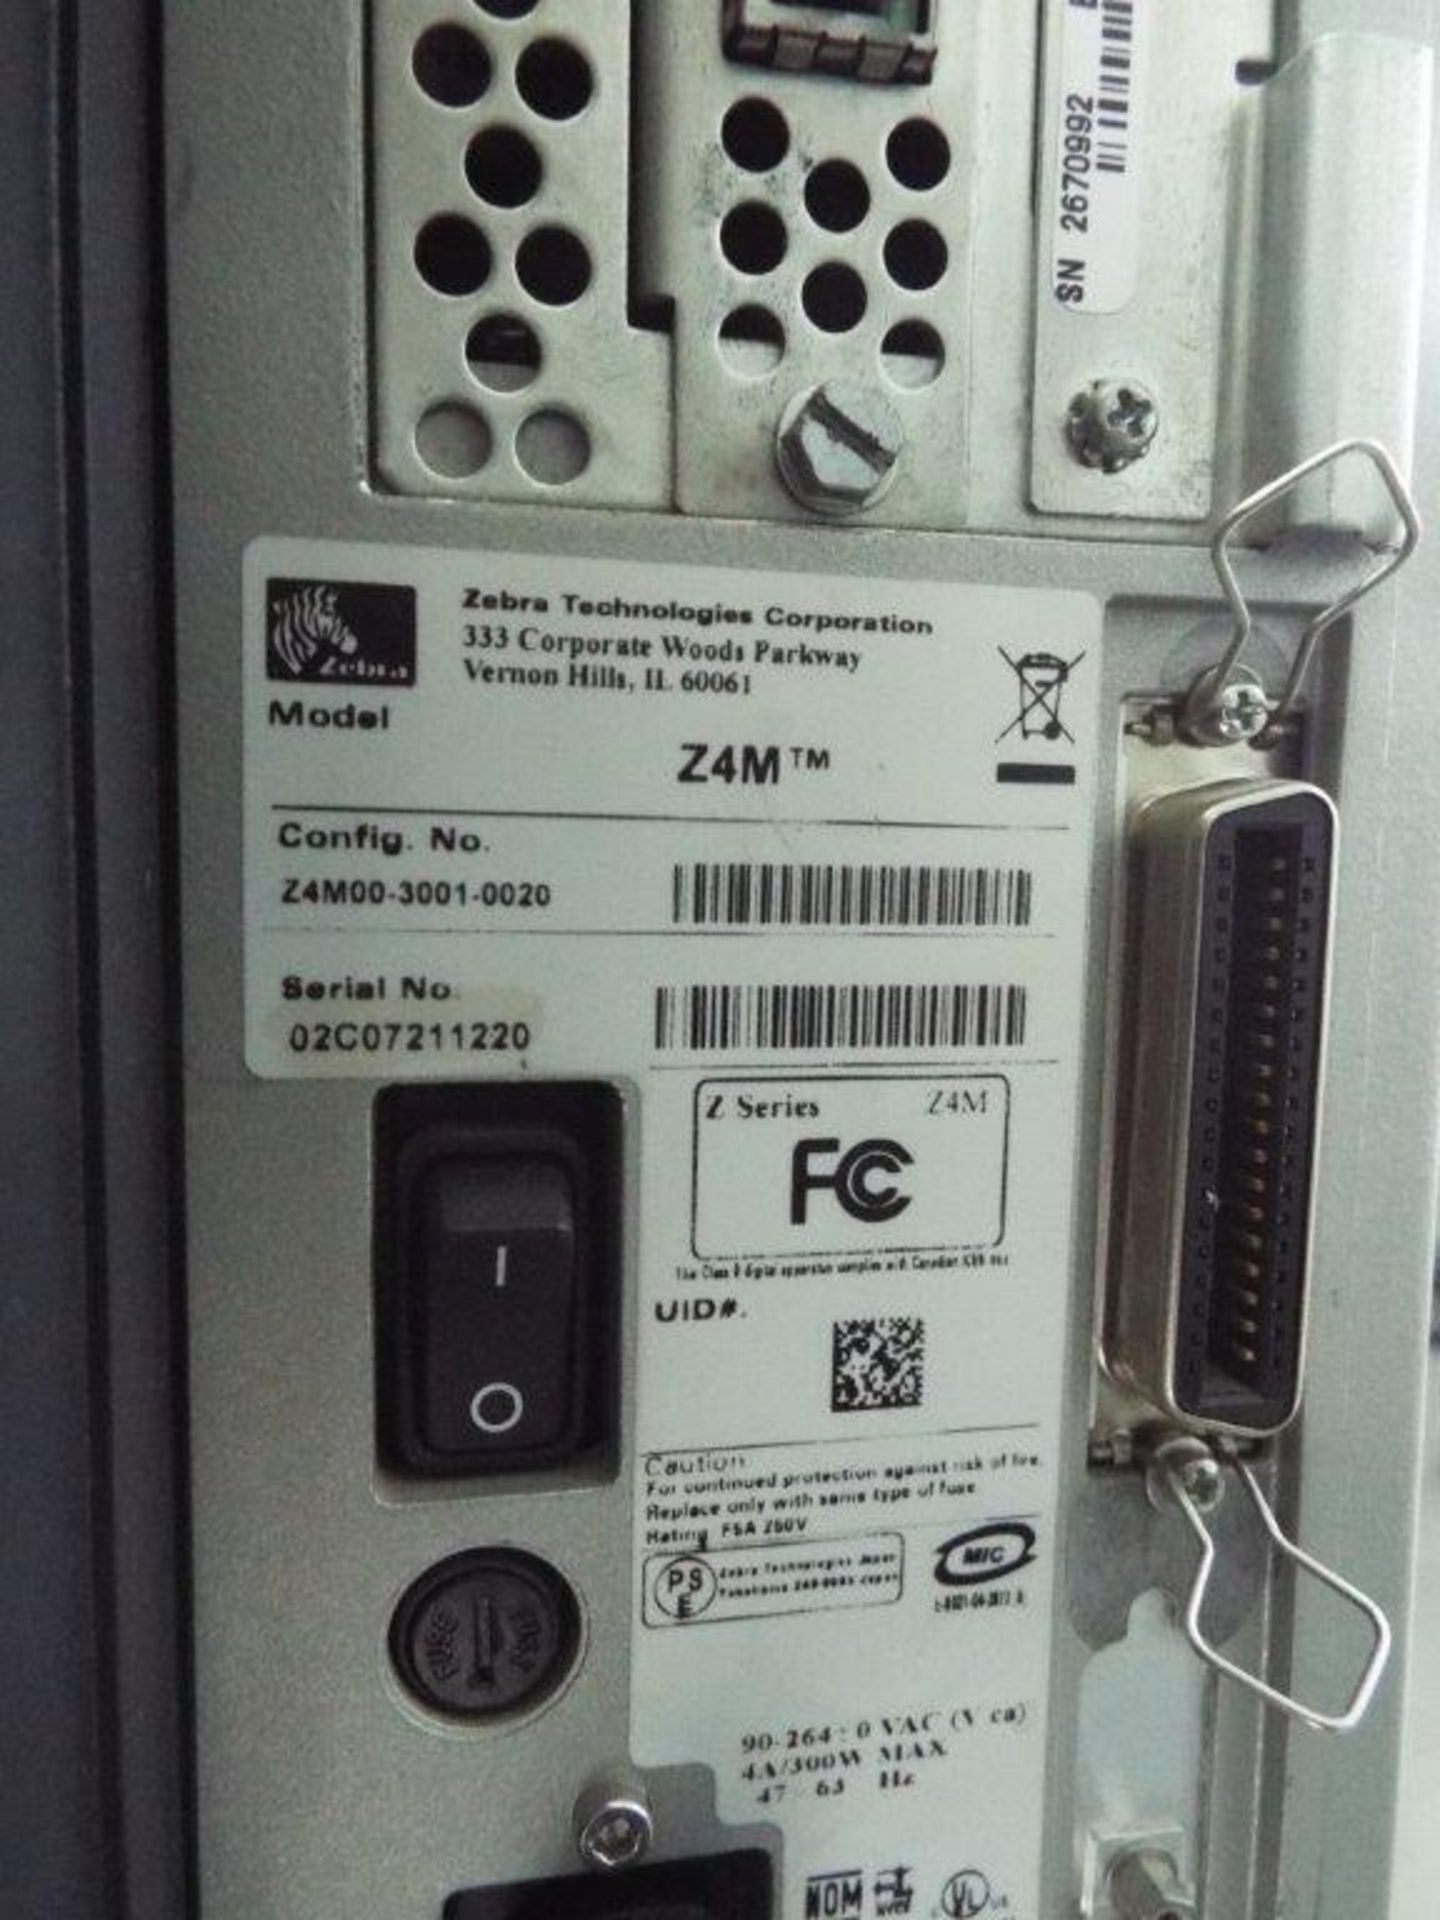 Zebra Z4M thermal printer - Image 2 of 2